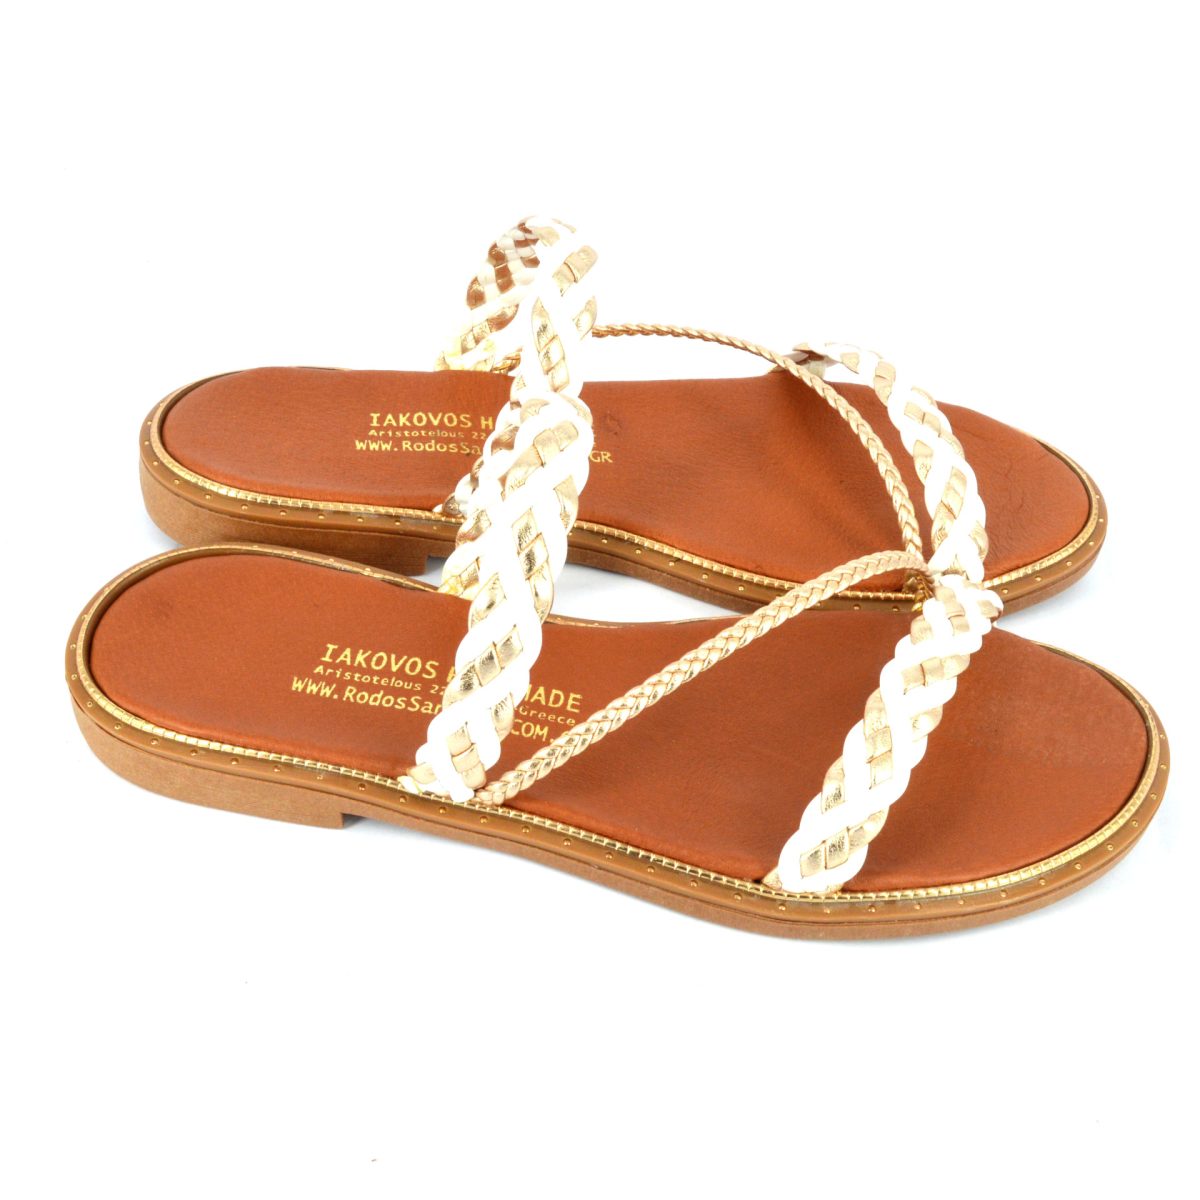 APTEROS – Rodos Sandals – IAKOVOS Hand Made Sandals